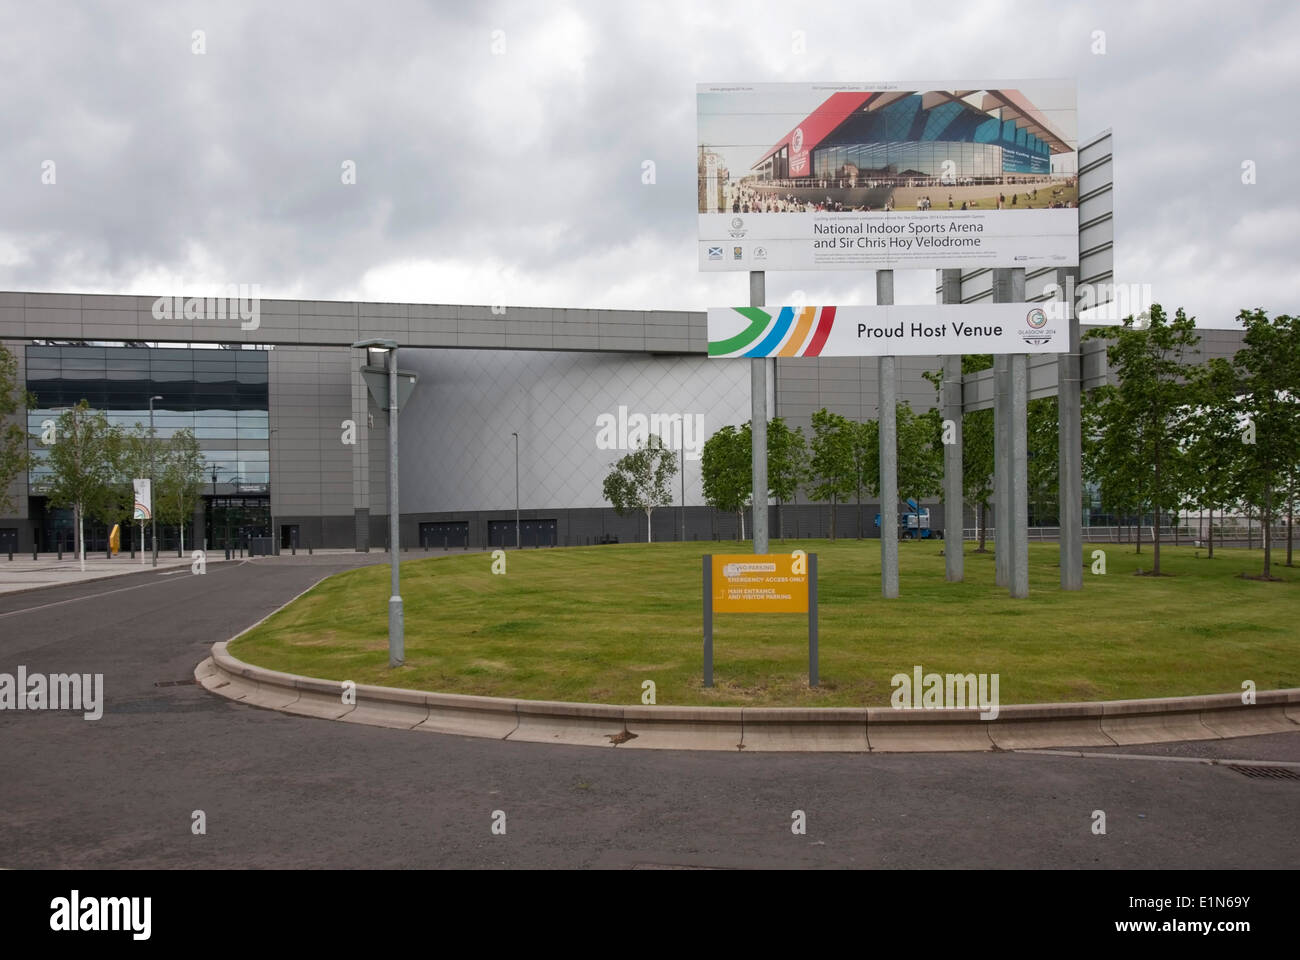 The Emirates Sports Arena & Sir Chris Hoy Velodrome London Road Glasgow Scotland Stock Photo